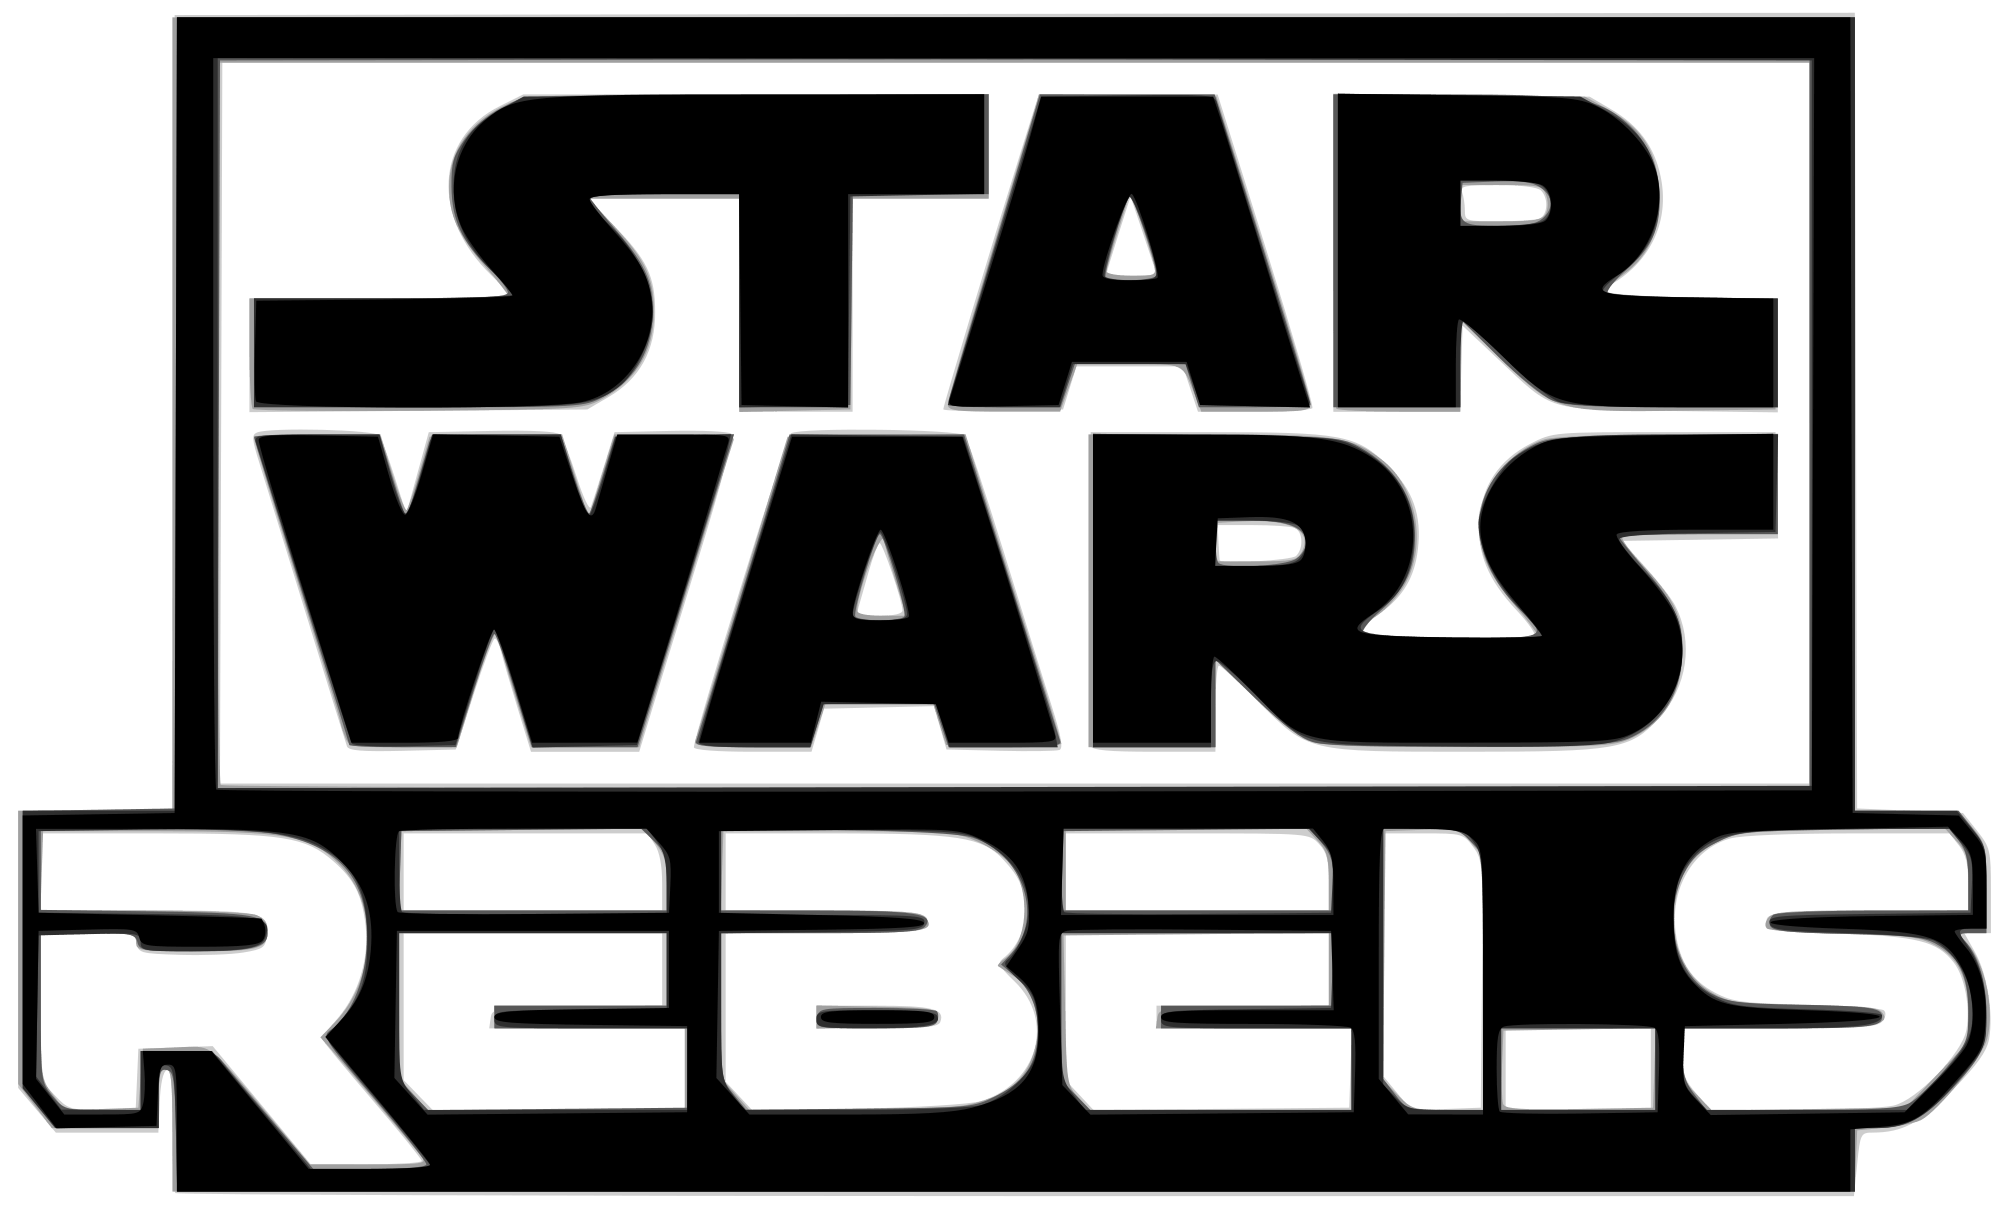 Black White Rebels Logo - Logo Star Wars Rebels schwarz.svg